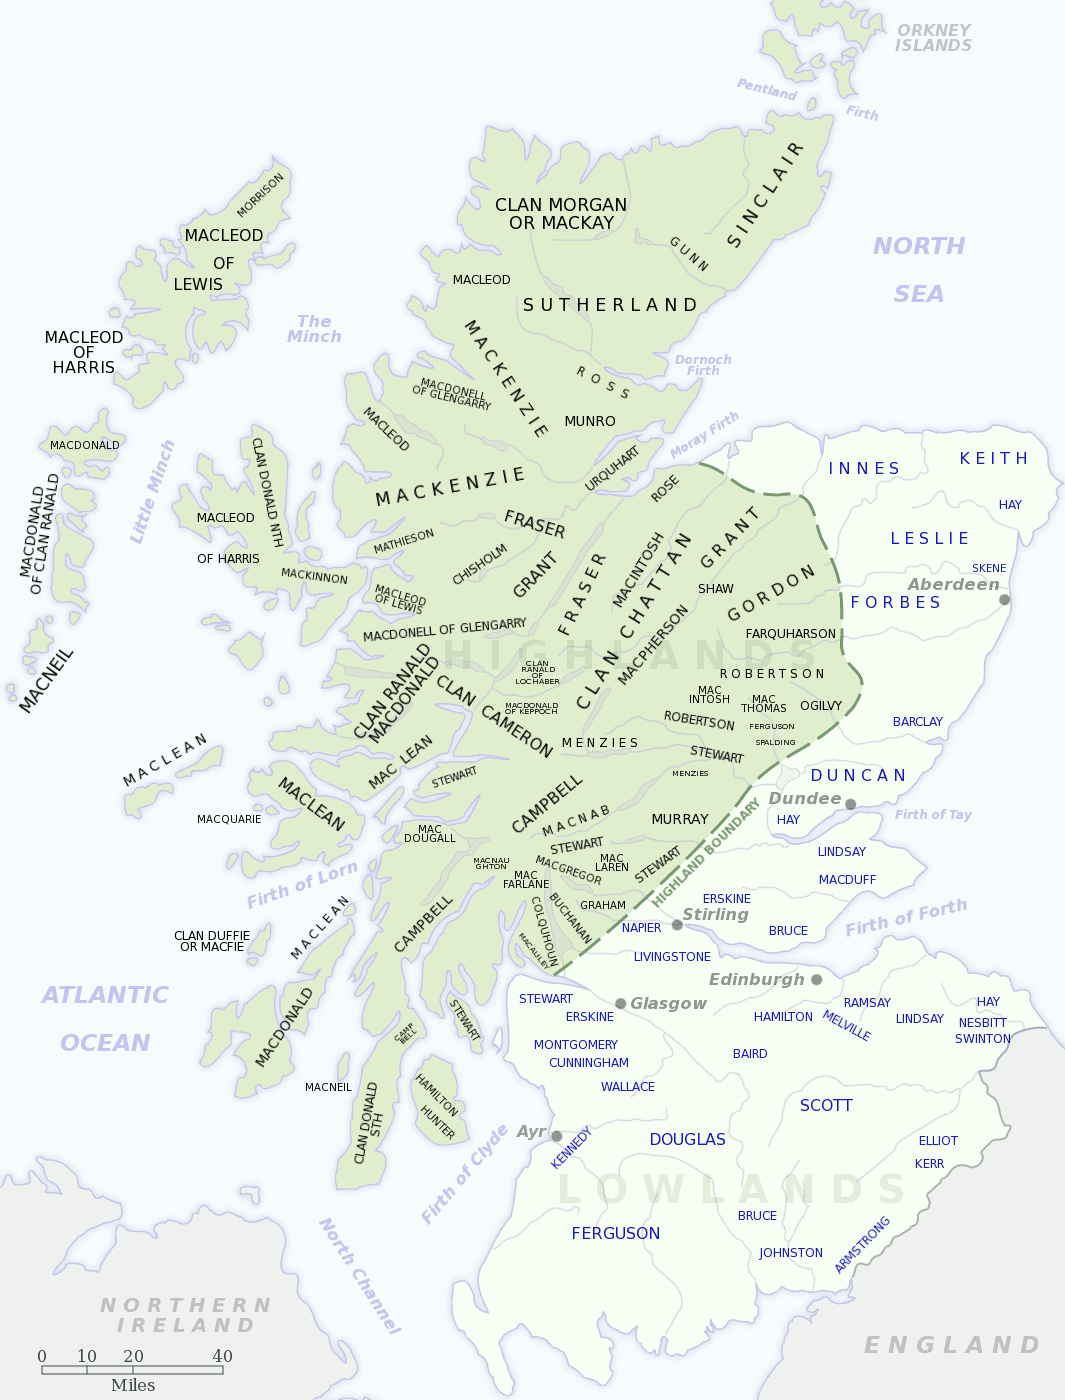 スコットランドの氏族分布地図（クリックで拡大）。緑の地域がハイランド、薄緑色がローランド